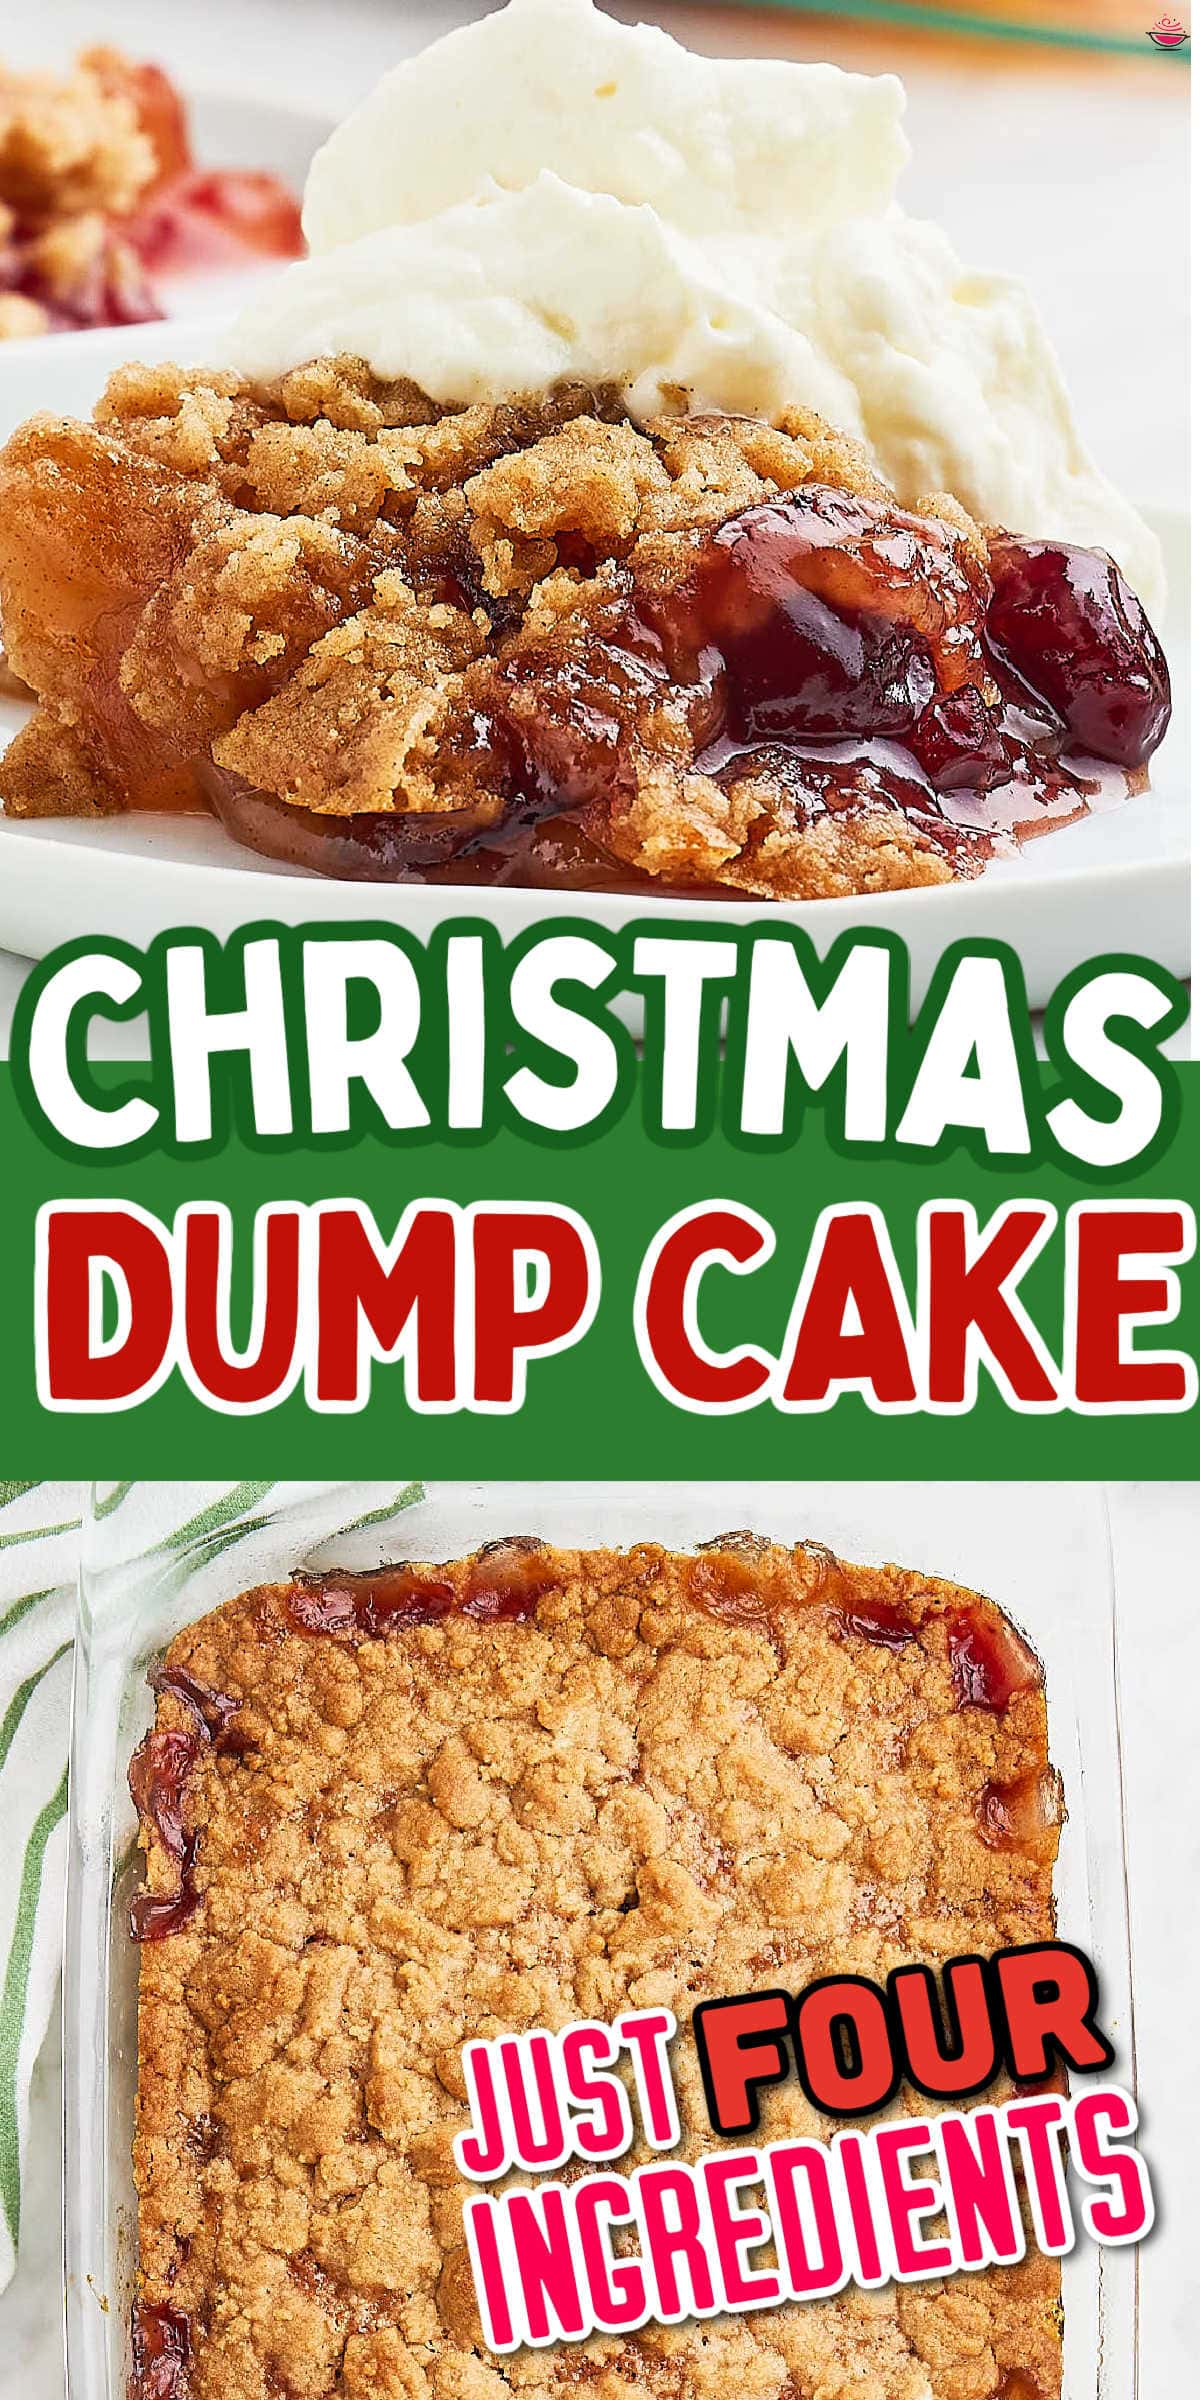 简单的转储蛋糕,圣诞的快乐!与苹果,小红莓,和一个温暖的肉桂崩溃,这道甜点是美味的,只需要几分钟。# cheerfulcook # dumpcake # christmasdumpcake # christmascake #通过@cheerfulcook easybakinggydF4y2Ba